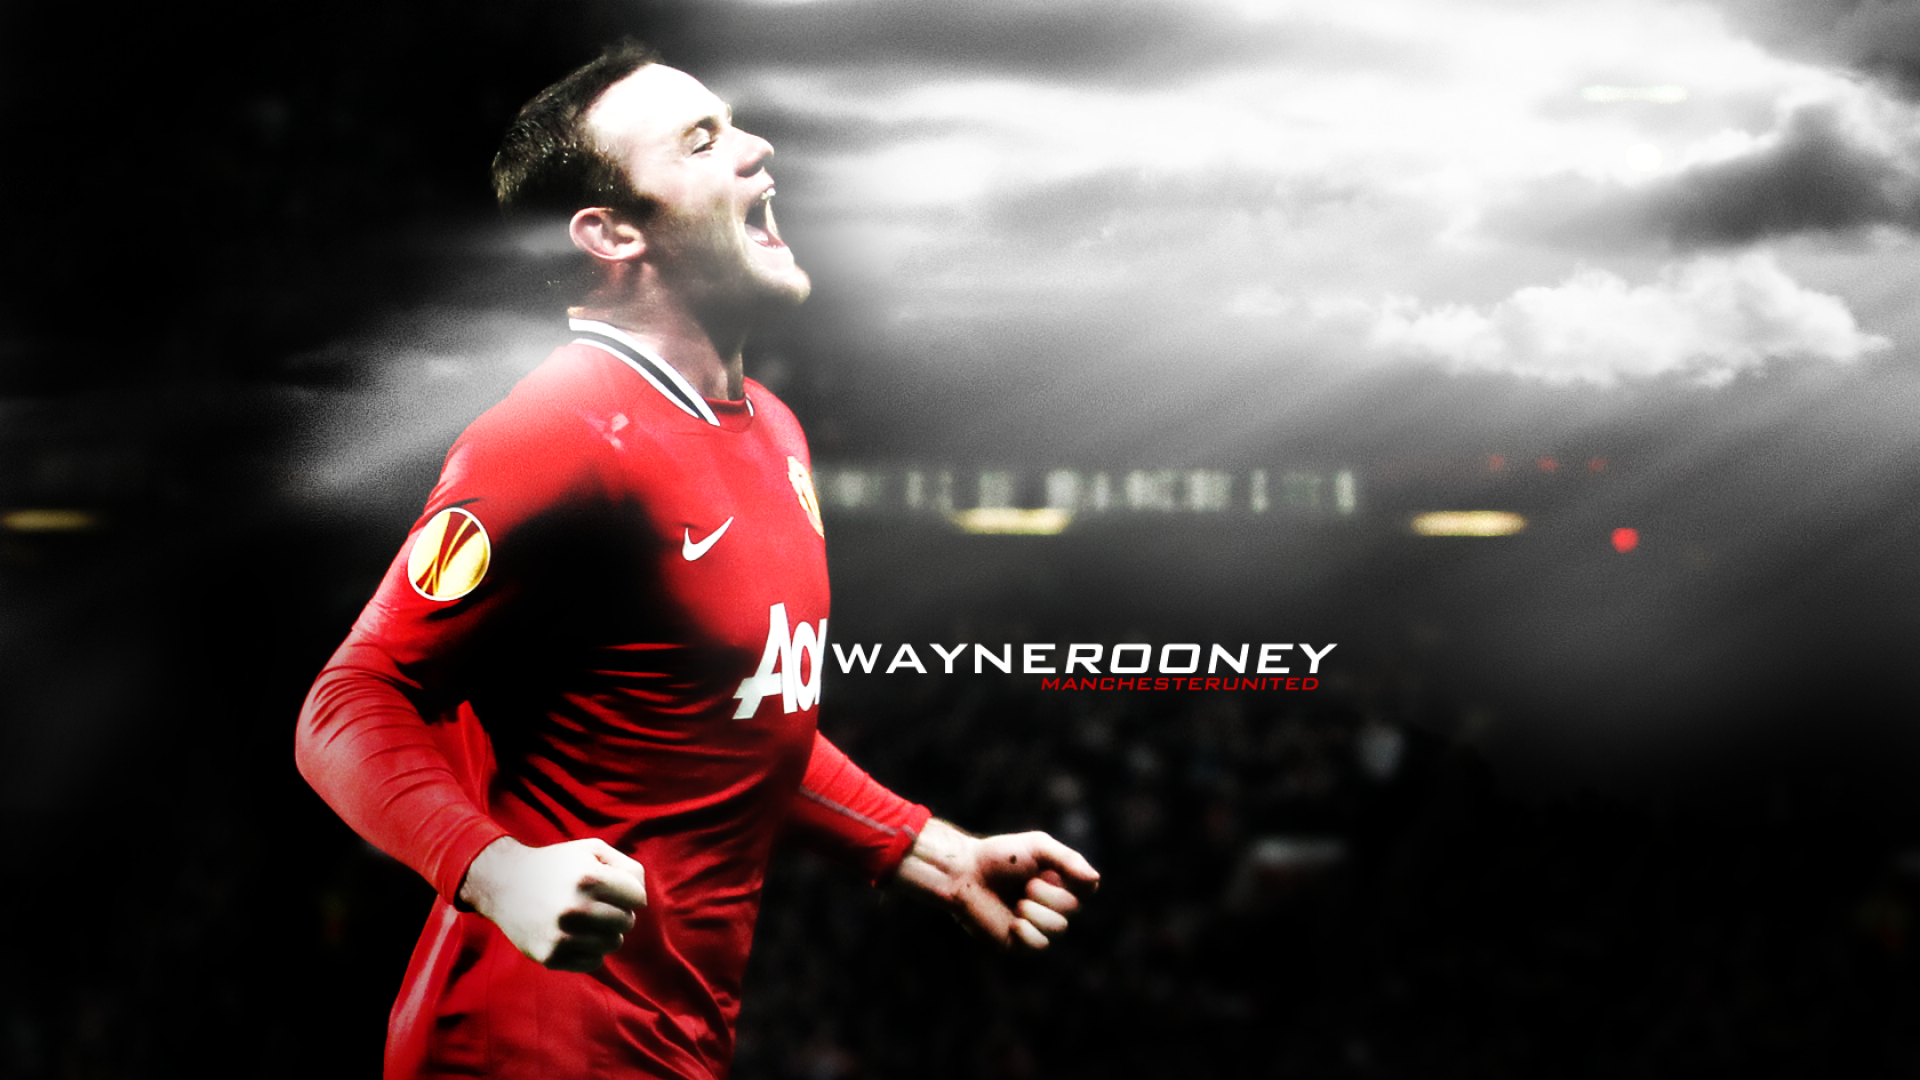 Wayne Rooney Manchester Wallpaper HD